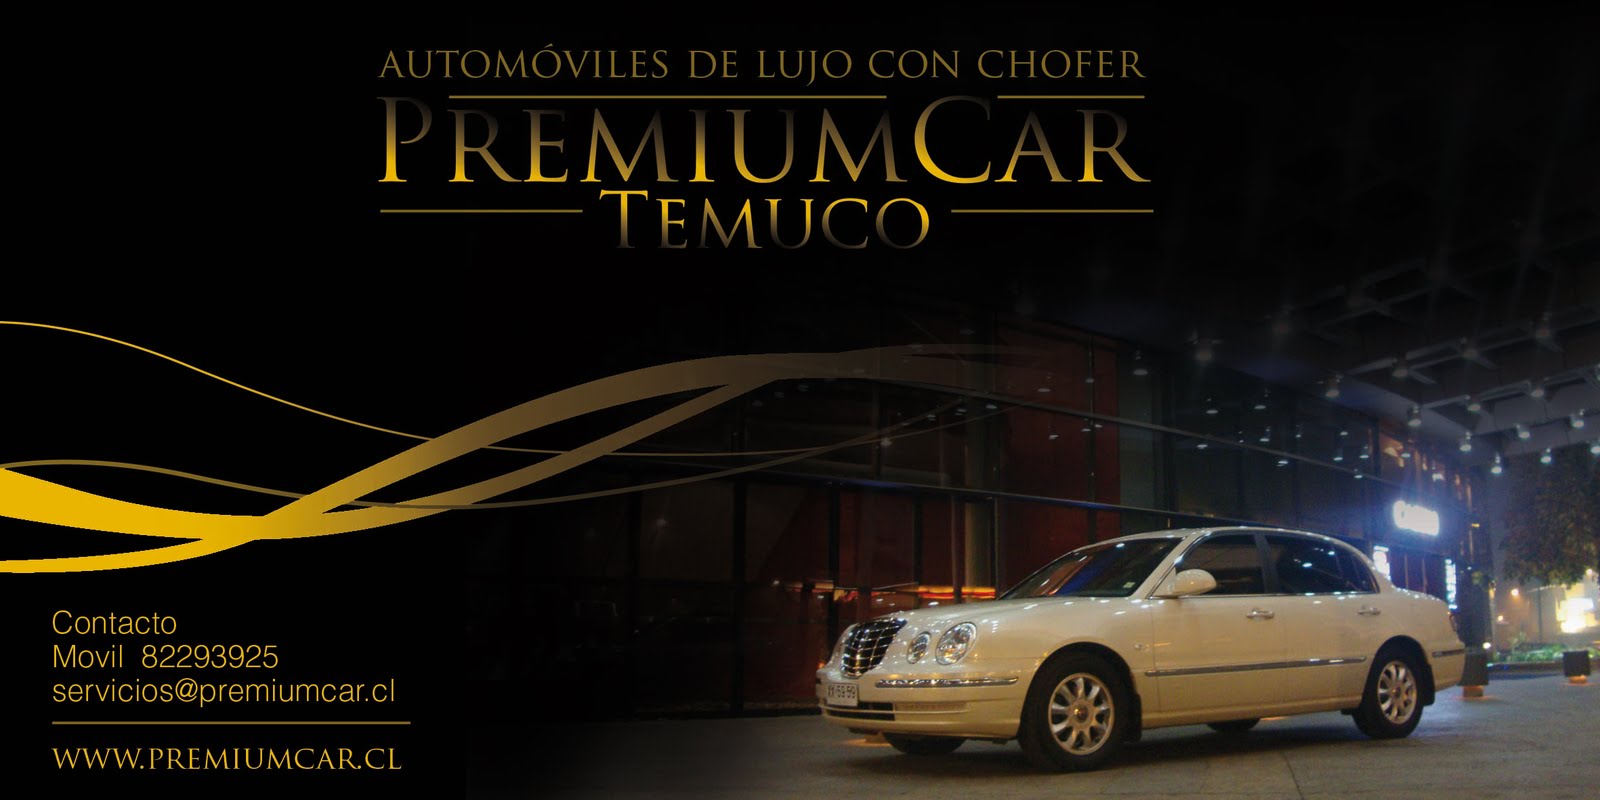 PREMIUM CAR TEMUCO - Automóviles de lujo con chofer - autos/novios/matrimonios/eventos/chofer